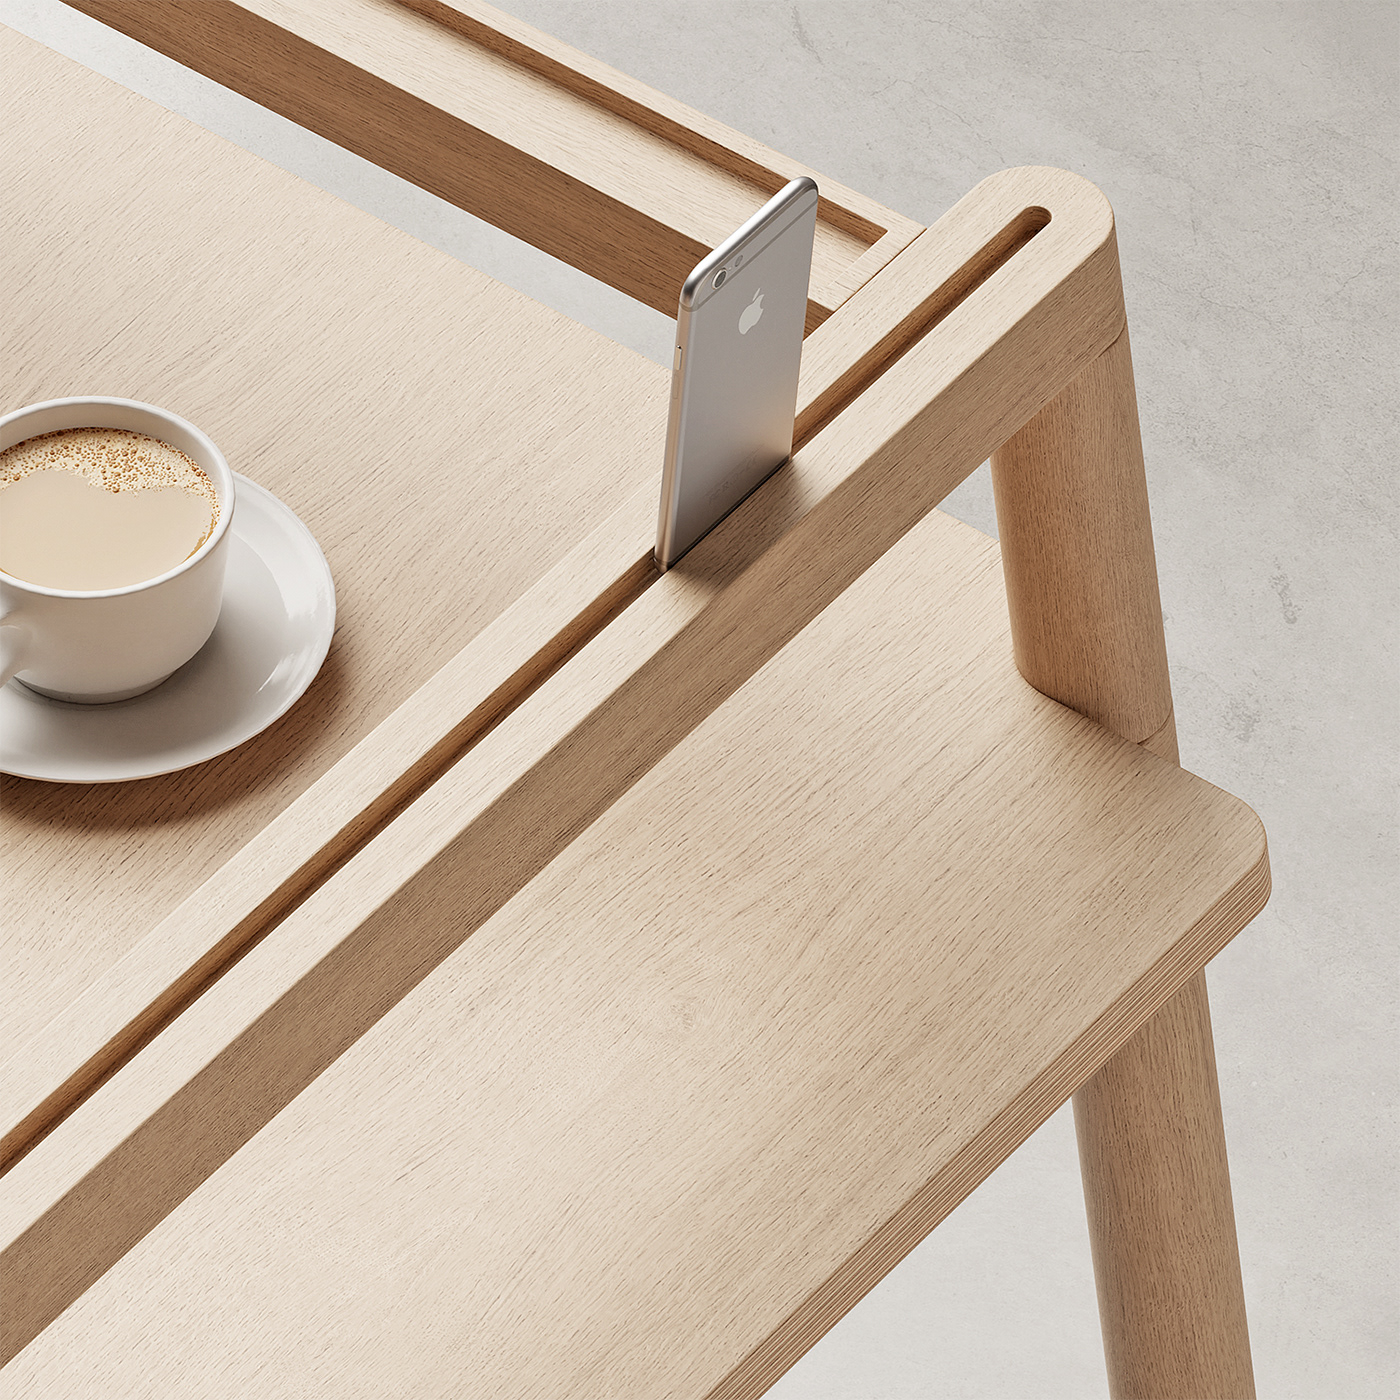 3D concept design desk furniture industrial design  product design  wood desk wood furniture wood joint